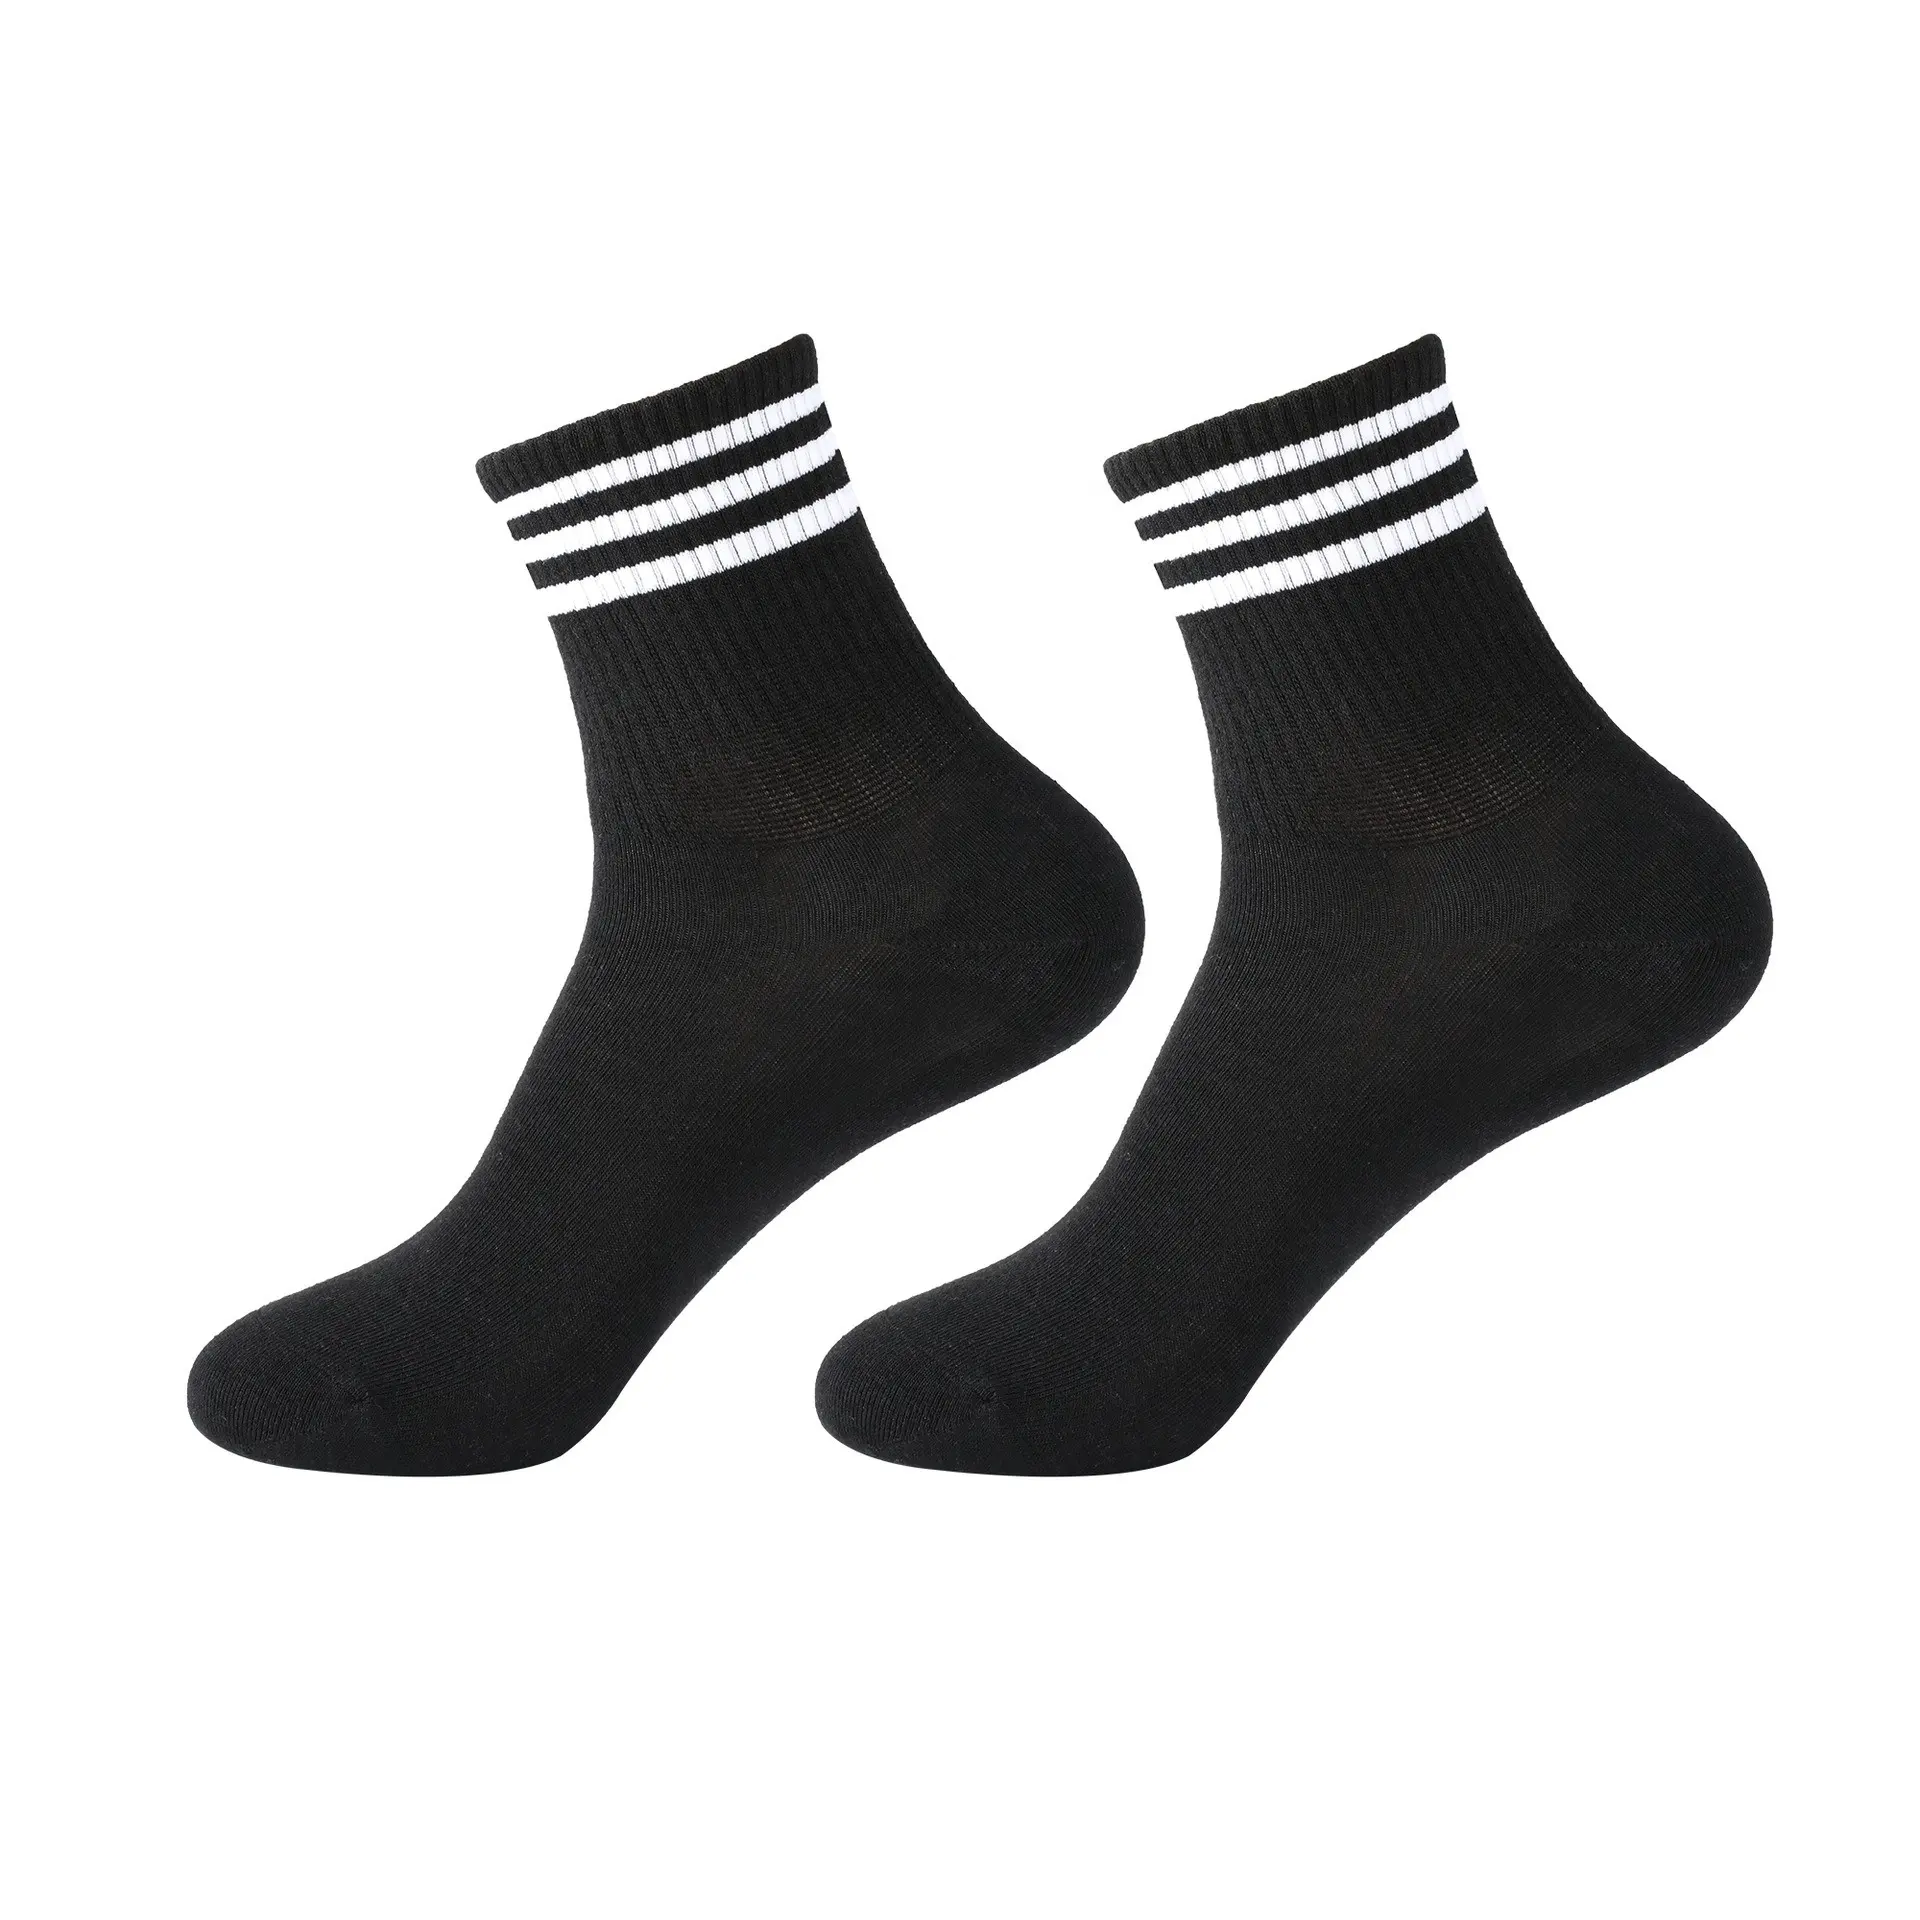 OEM Personalizado Homens Mulheres Vestido e Calças Meias Crew Socks Daily Stripe Casual Ankle Socks